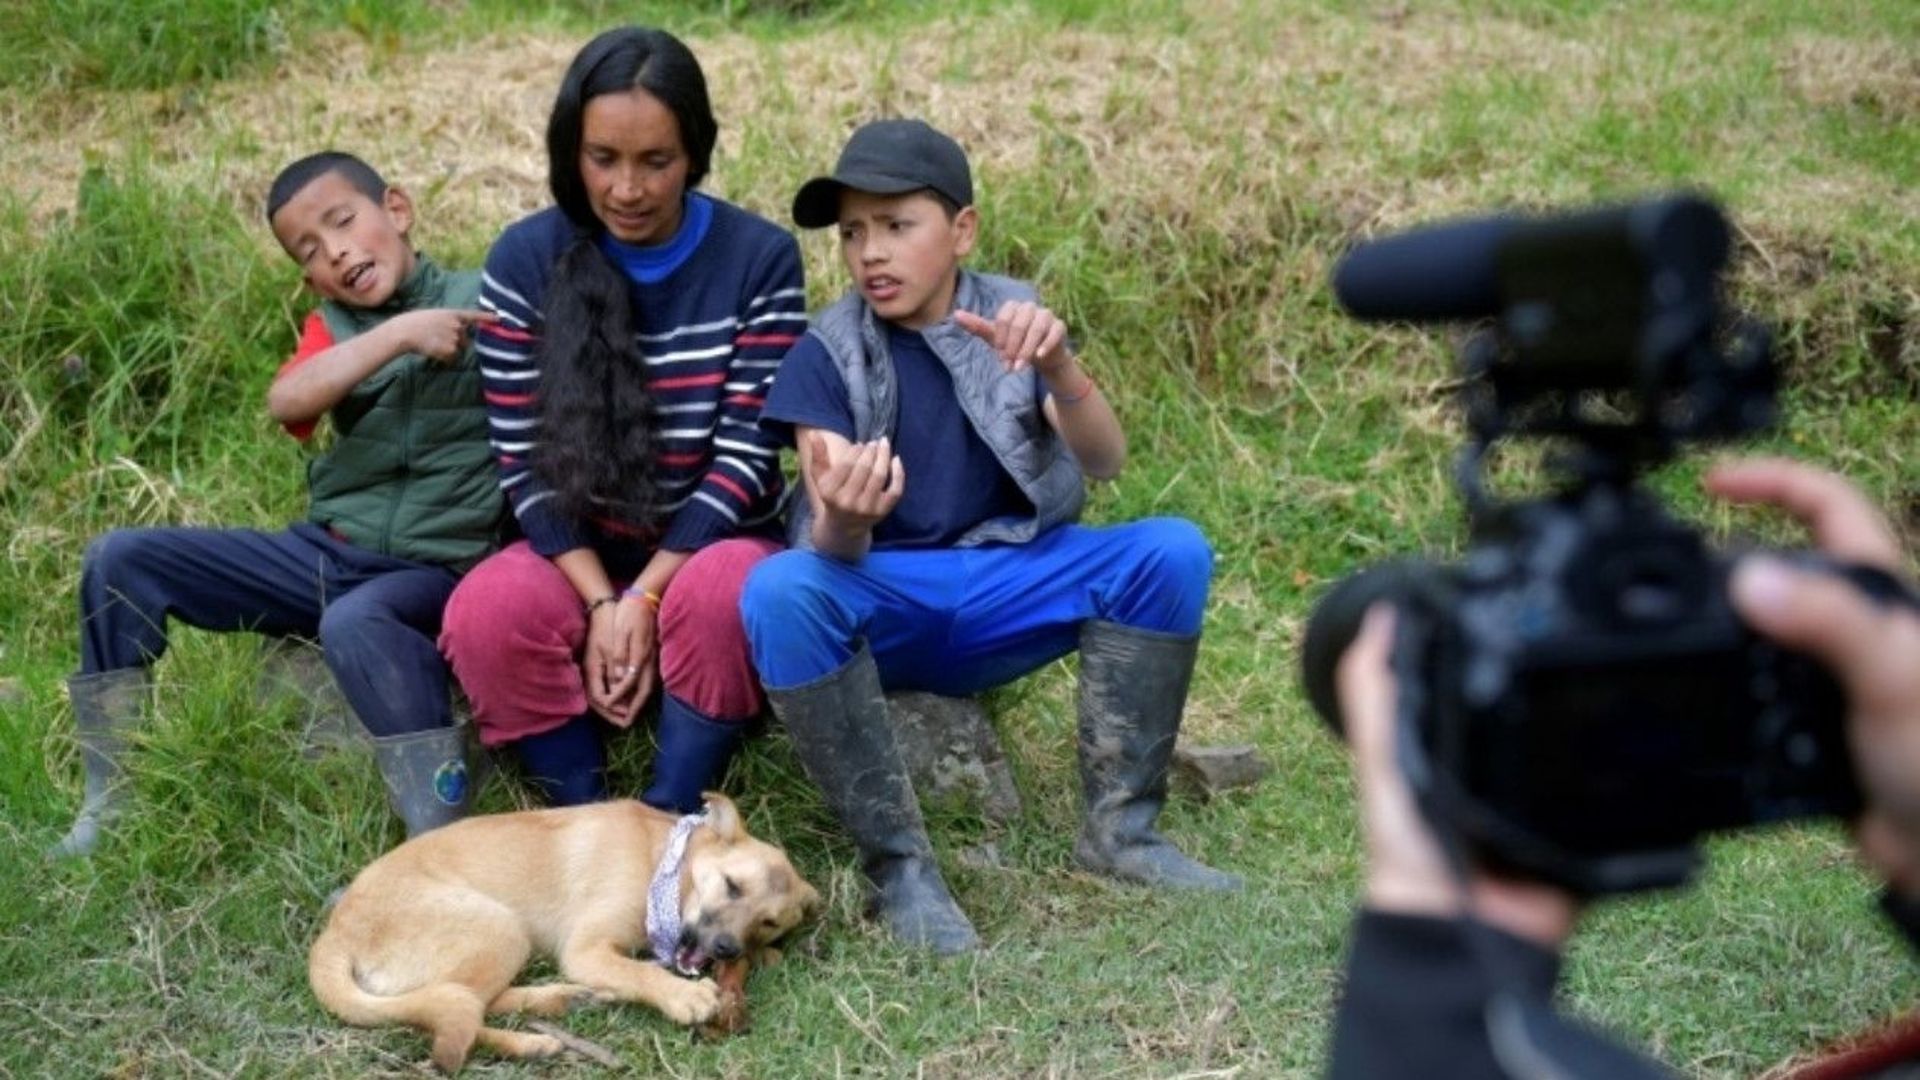 Nubia Gaona, ses fils Jaime Alejandro et Arley David, filmés par leur voisine Juliana Zapata, dans leur petite ferme de Chipaque, en Colombie, le 6 juin 2020